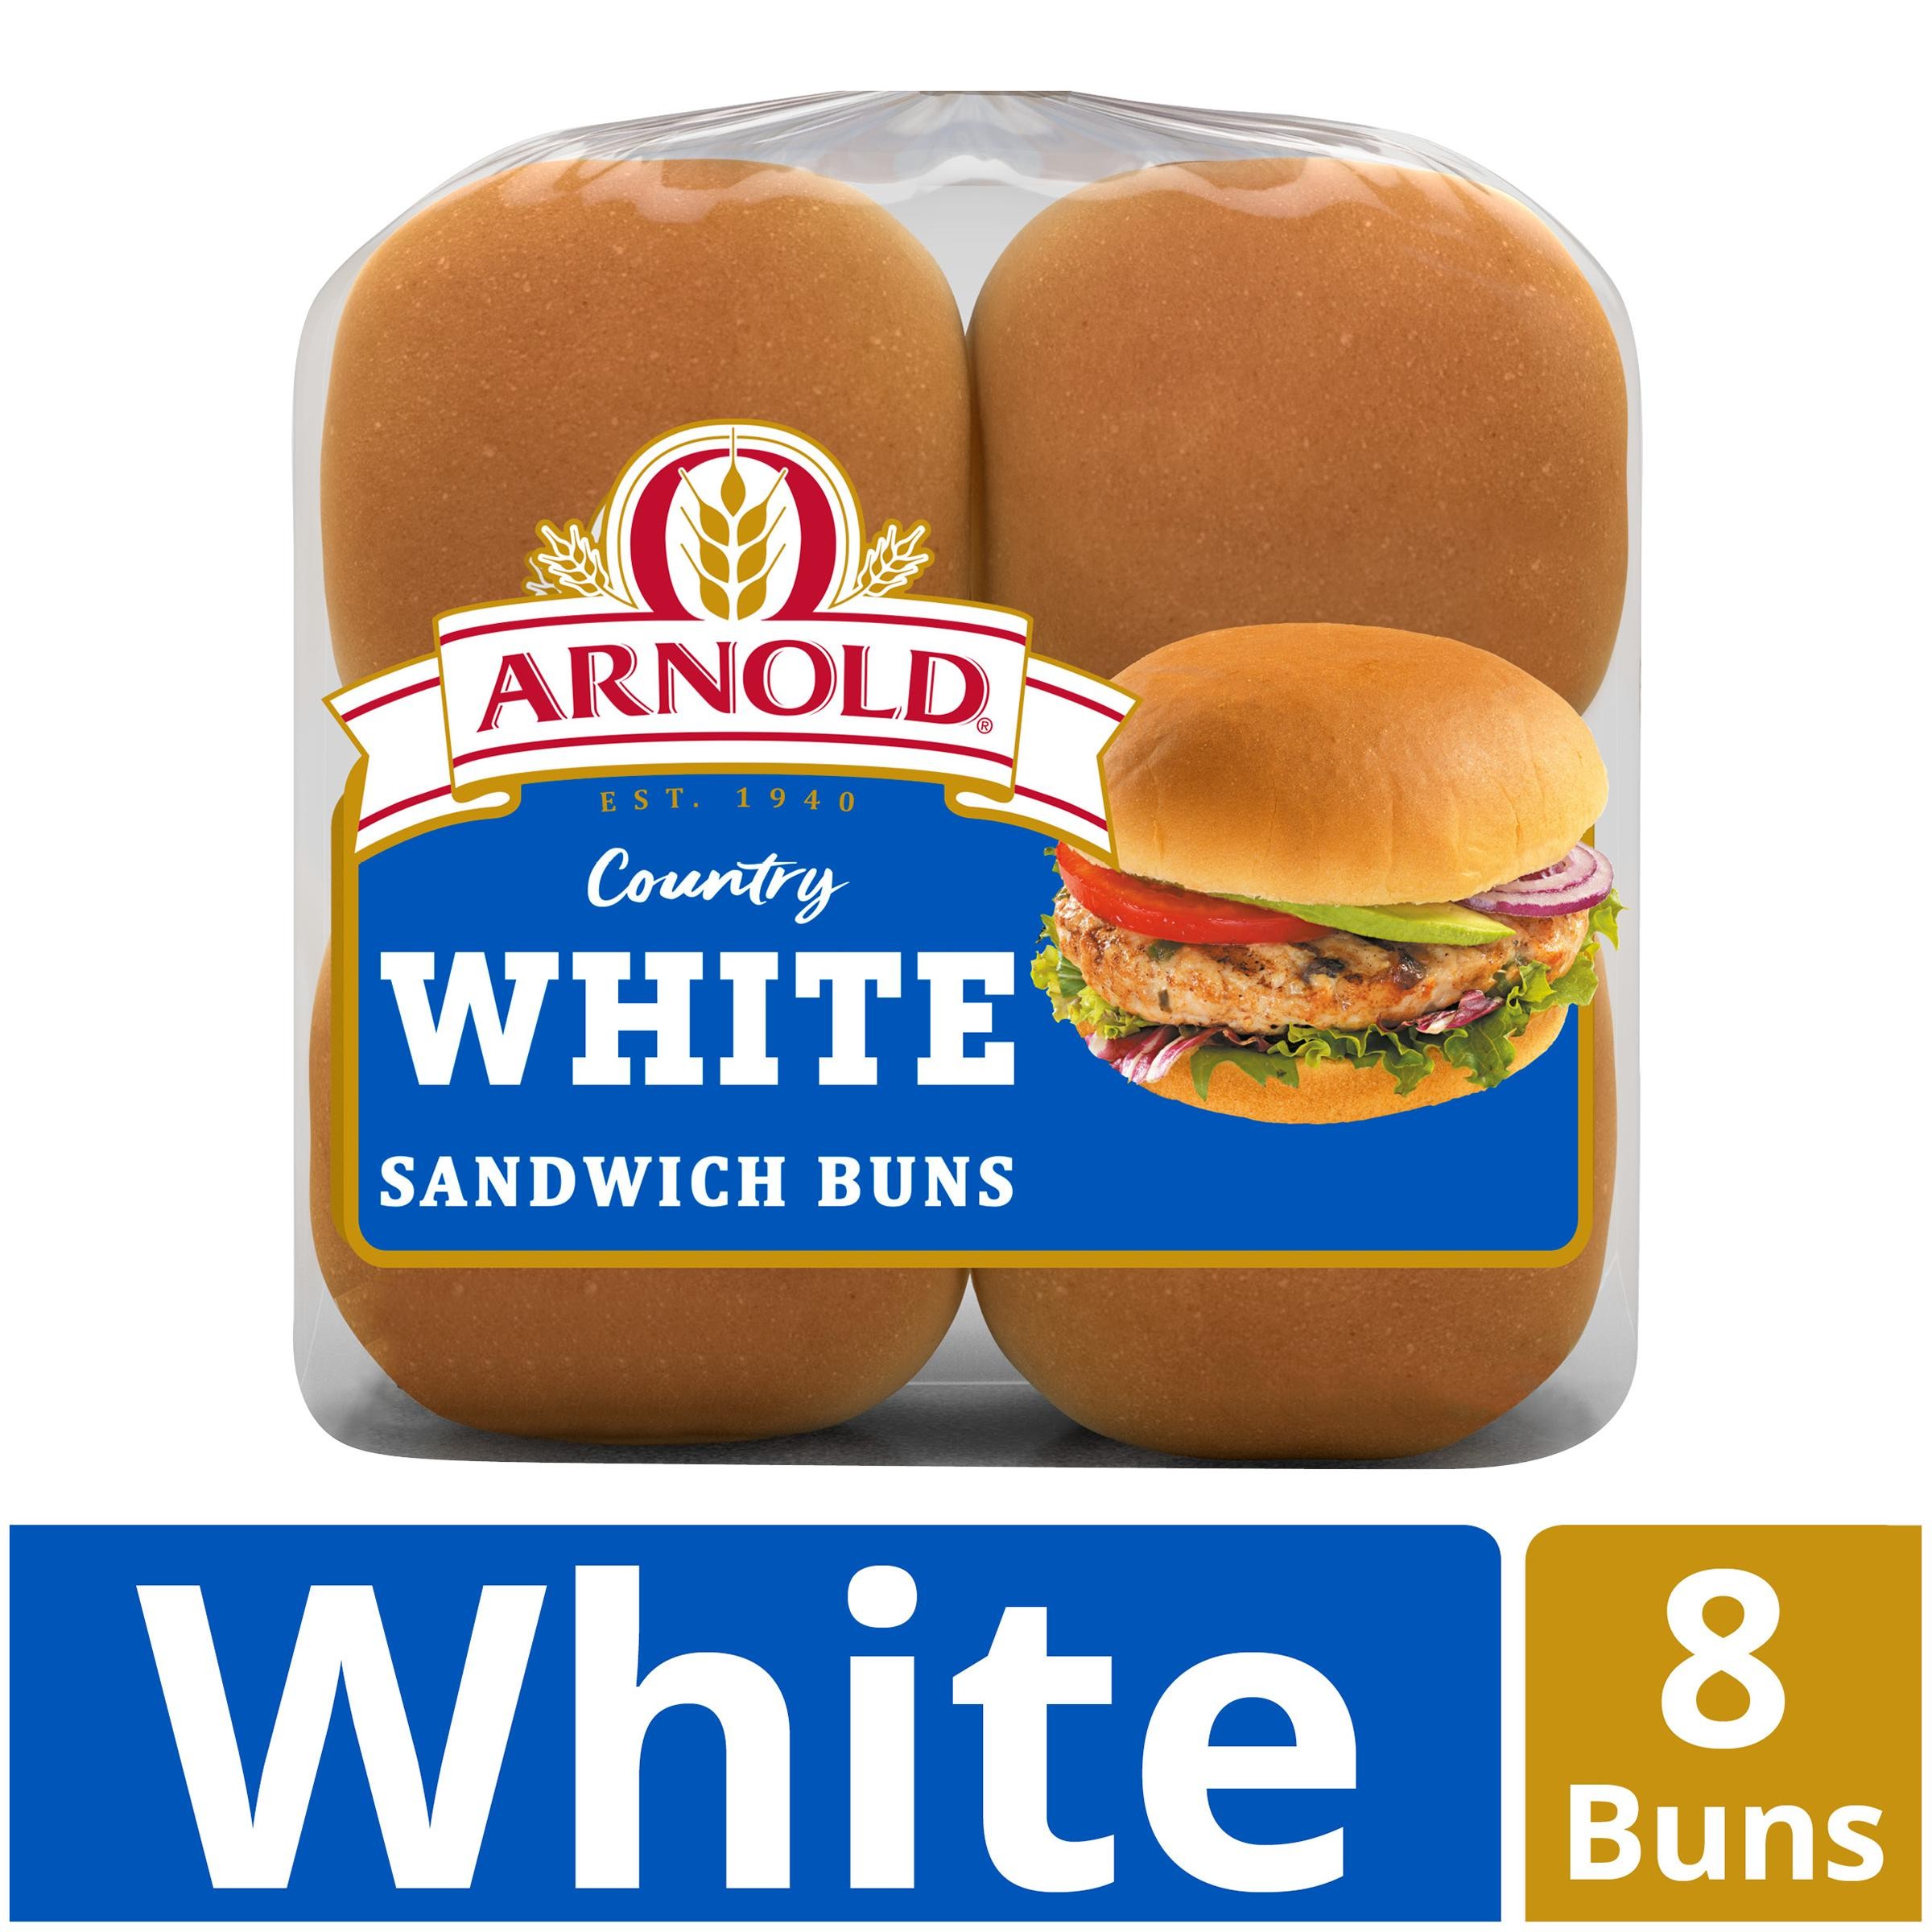 White Sandwich Buns, White